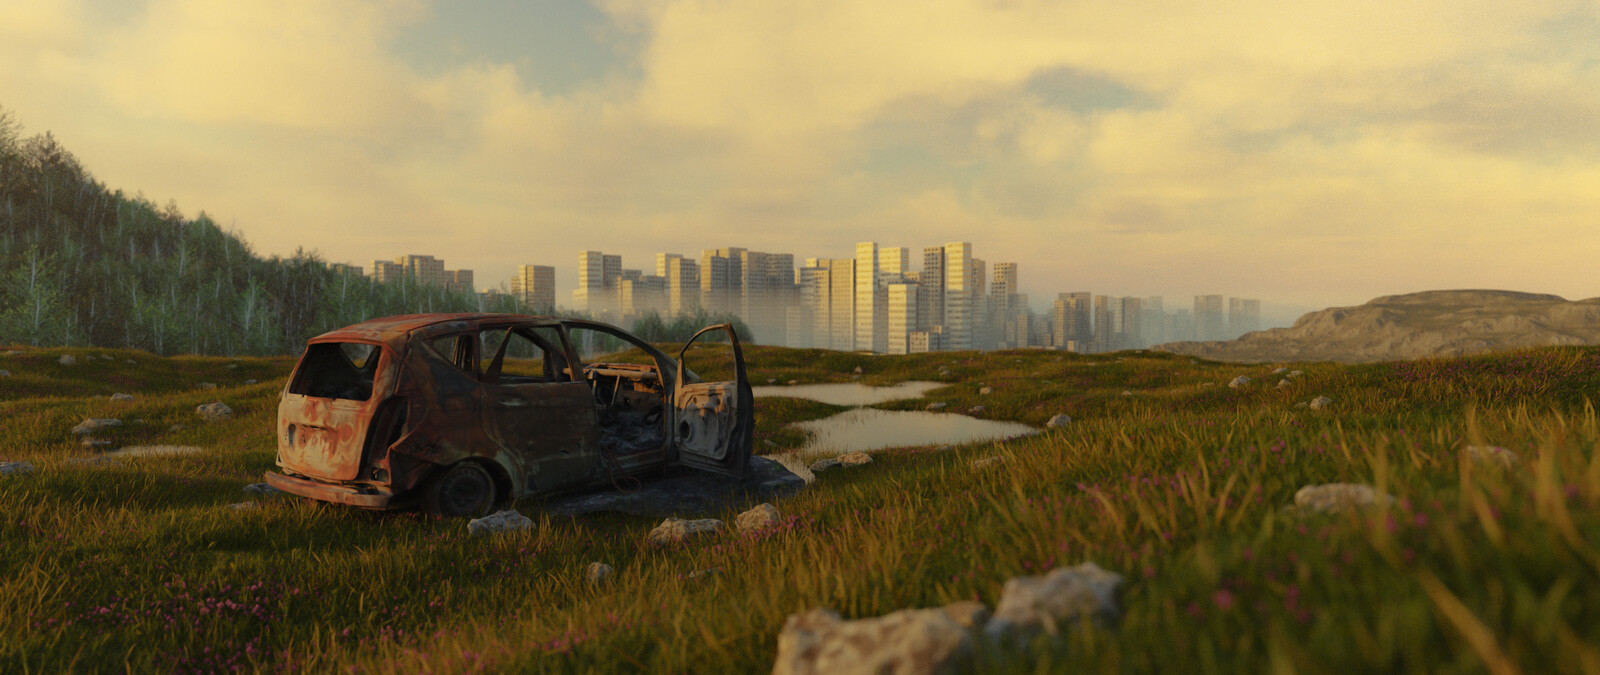 Car wasteland